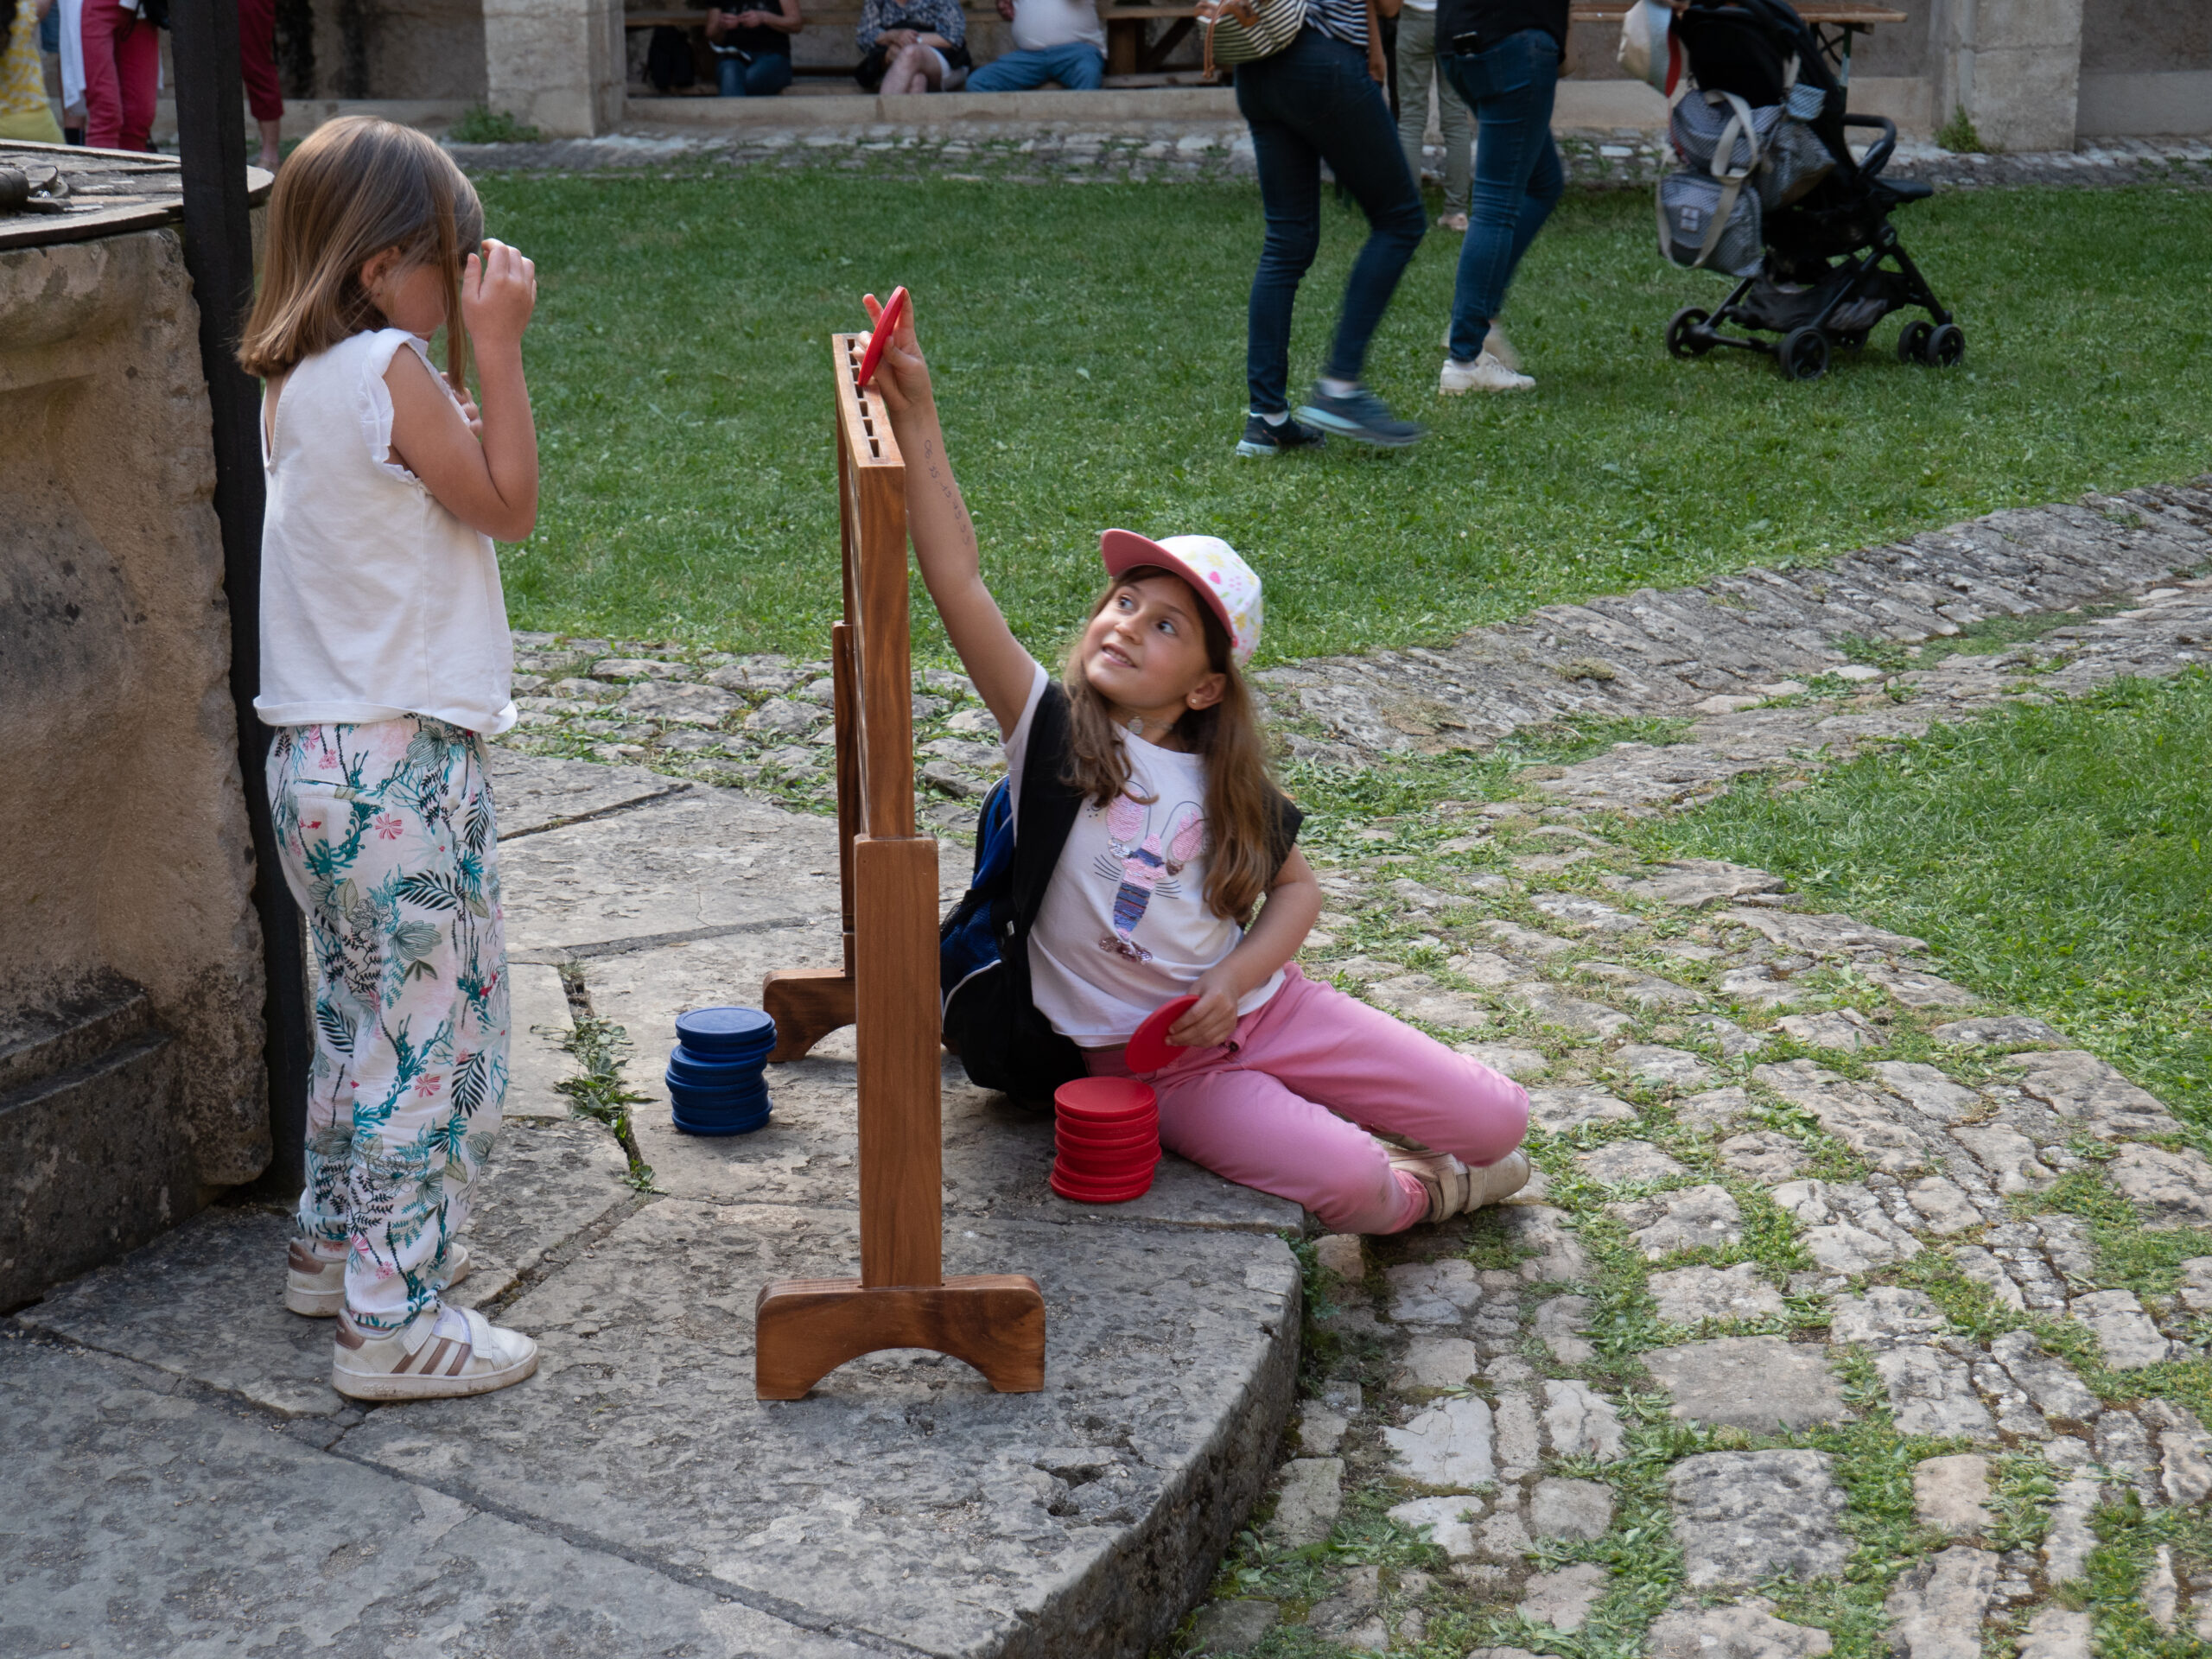 Deux fillette jouent à une puissance quatre géant, près d'une fontaine aux contours herbacés